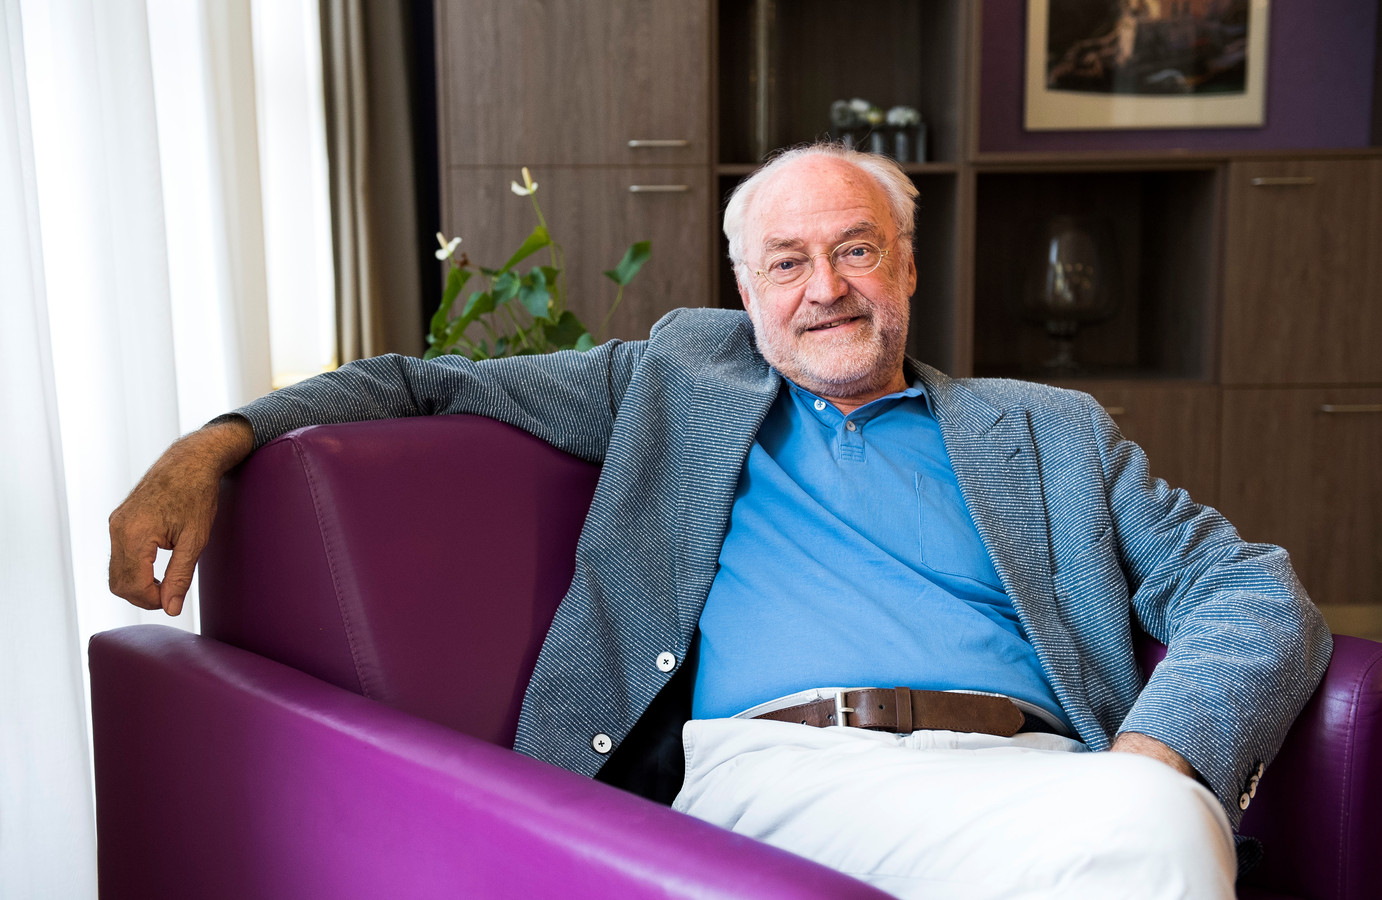 ‘Geluksprofessor’ Ruut Veenhoven is met zijn 79 jaar nog steeds druk op de Erasmus Universiteit, waar hij de scepter zwaait over de World Database of Happiness: ,,Met een 7,5 kun je niet zeggen dat we ons ongelukkig voelen.”